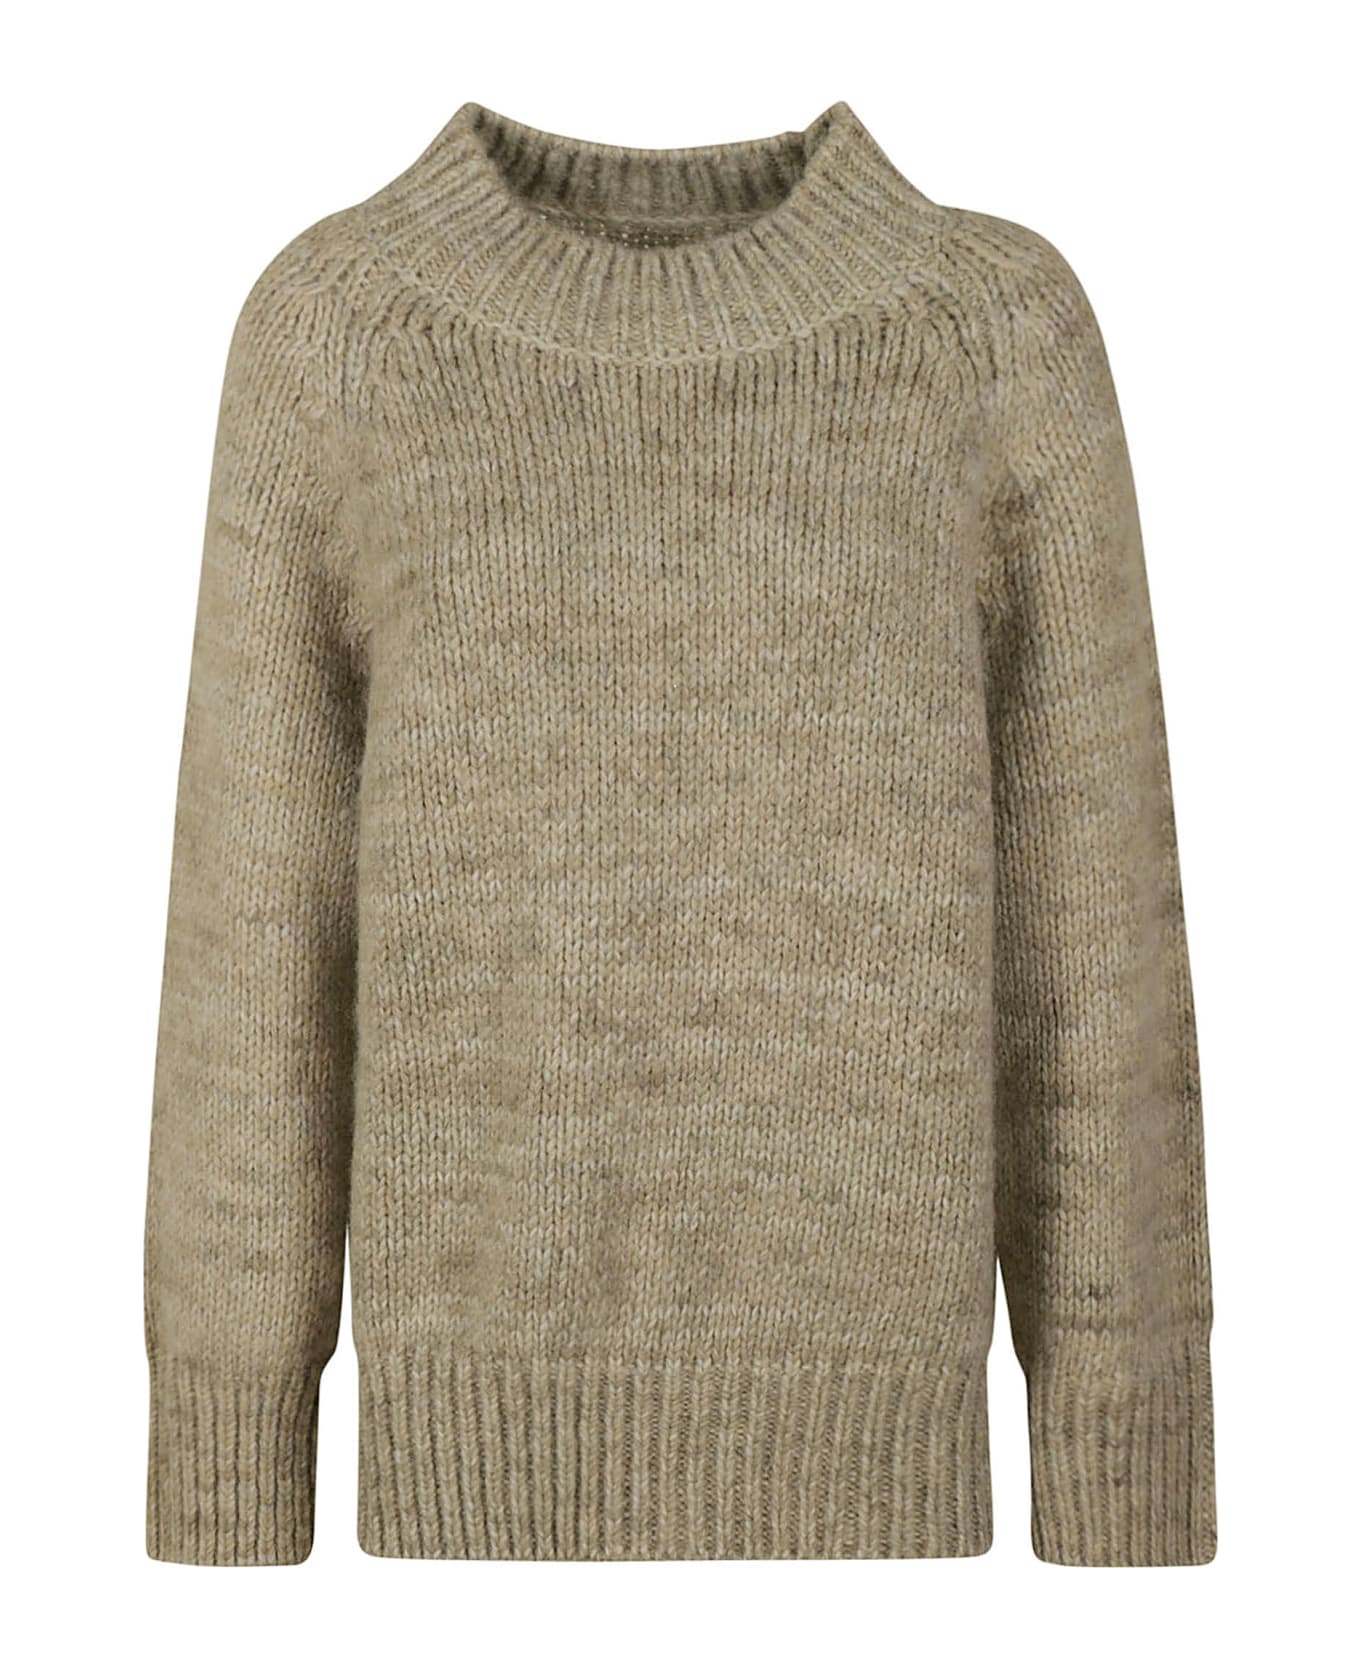 Maison Margiela Rib Knit Oversized Sweater - Military